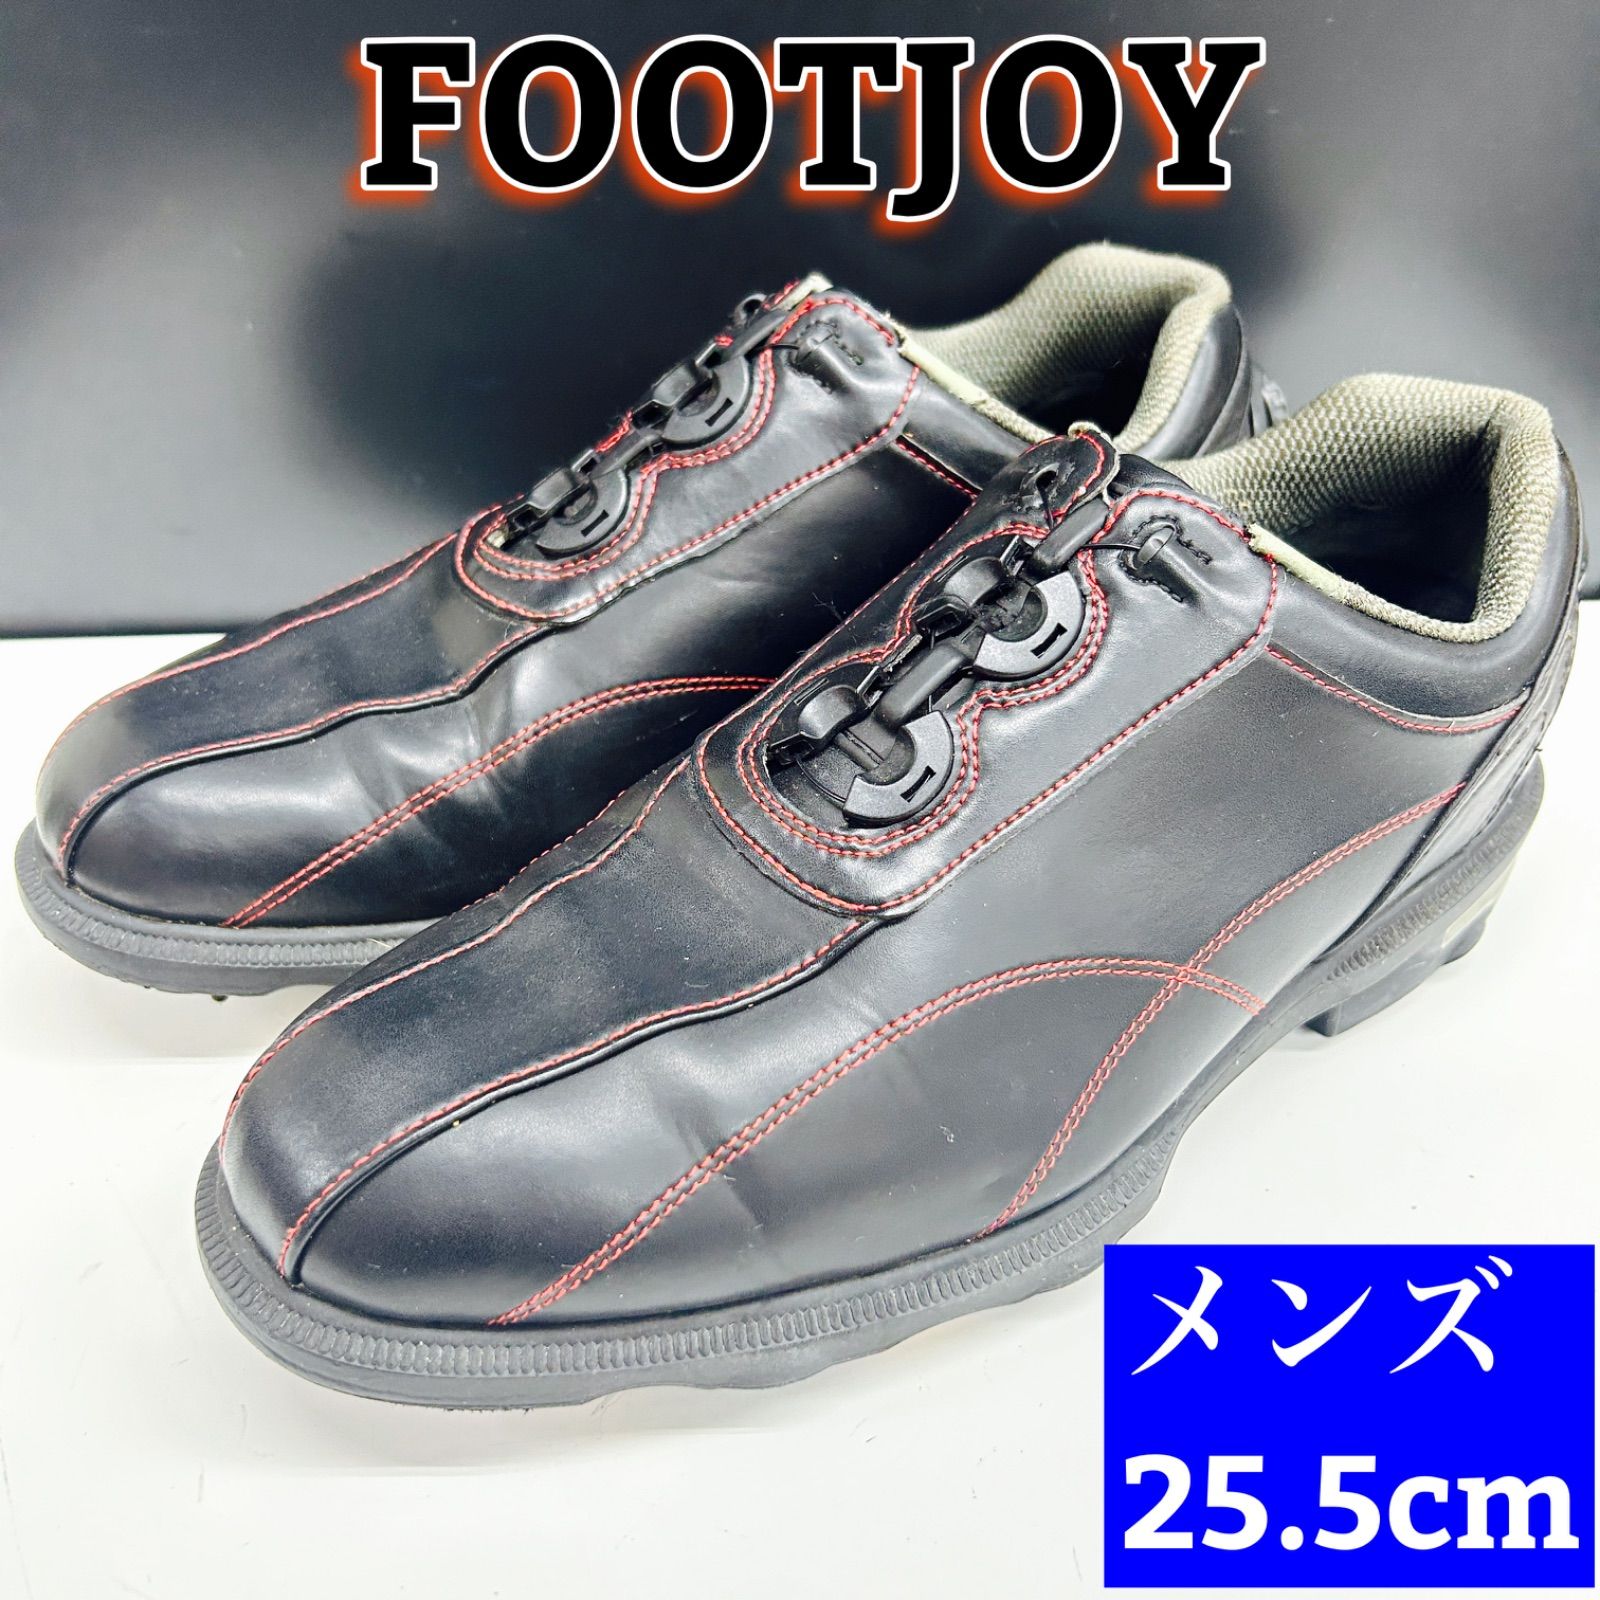 FOOT JOYゴルフシューズ25.5cm - シューズ(男性用)